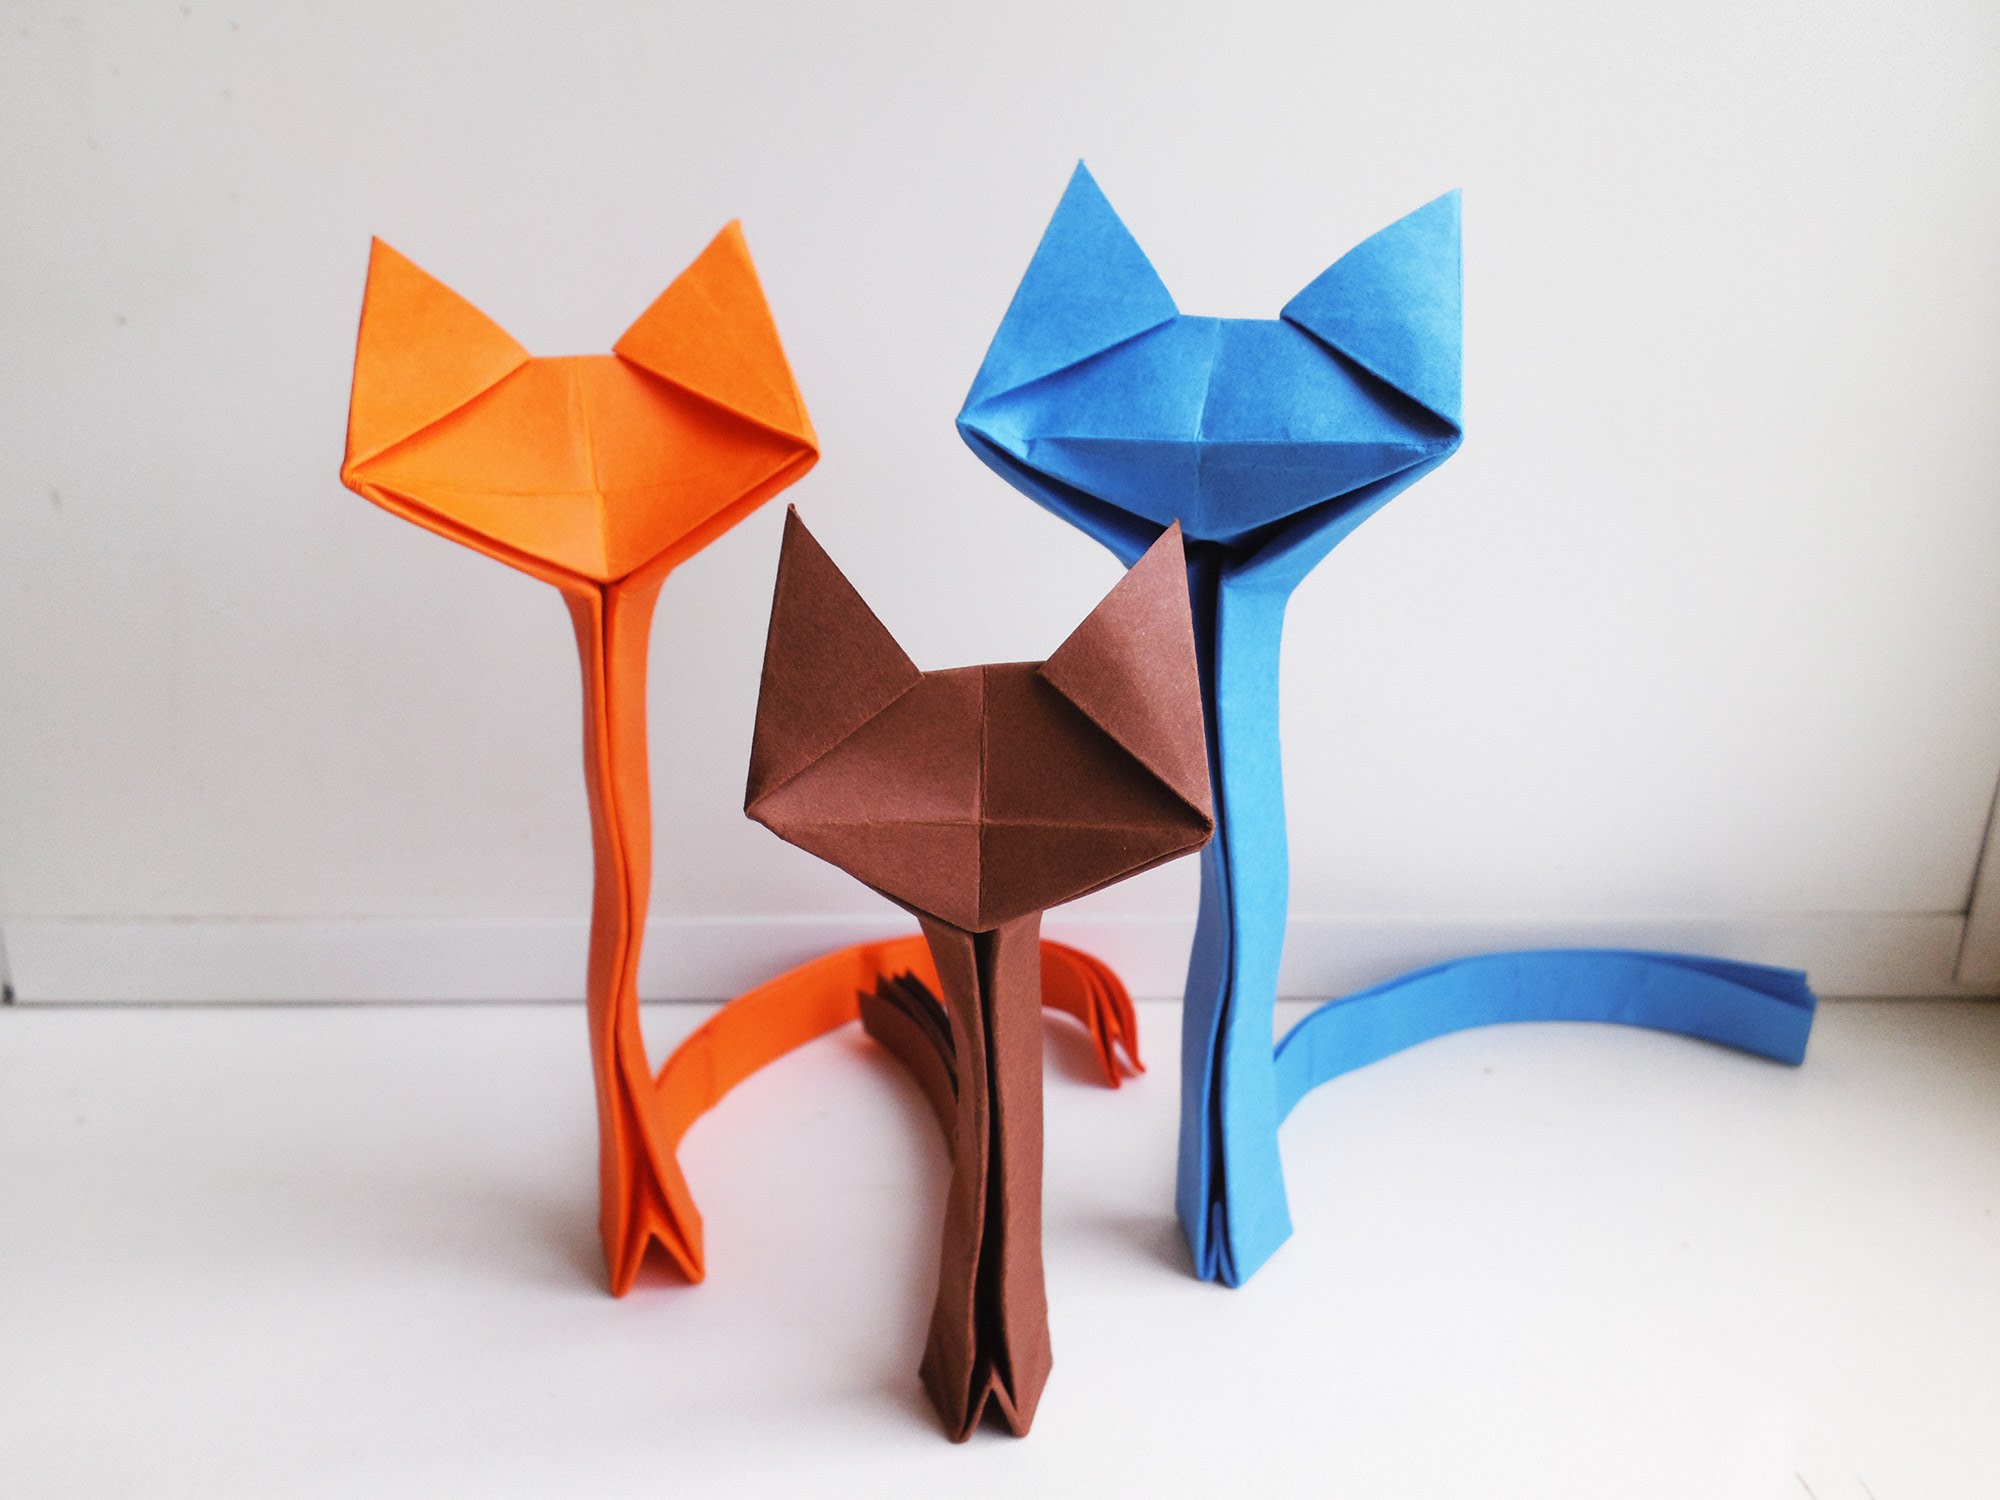 Оригами кошка: как сделать из бумаги, схема для детей и начинающих, пошаговая инструкция и поэтапная сборка модульного оригами